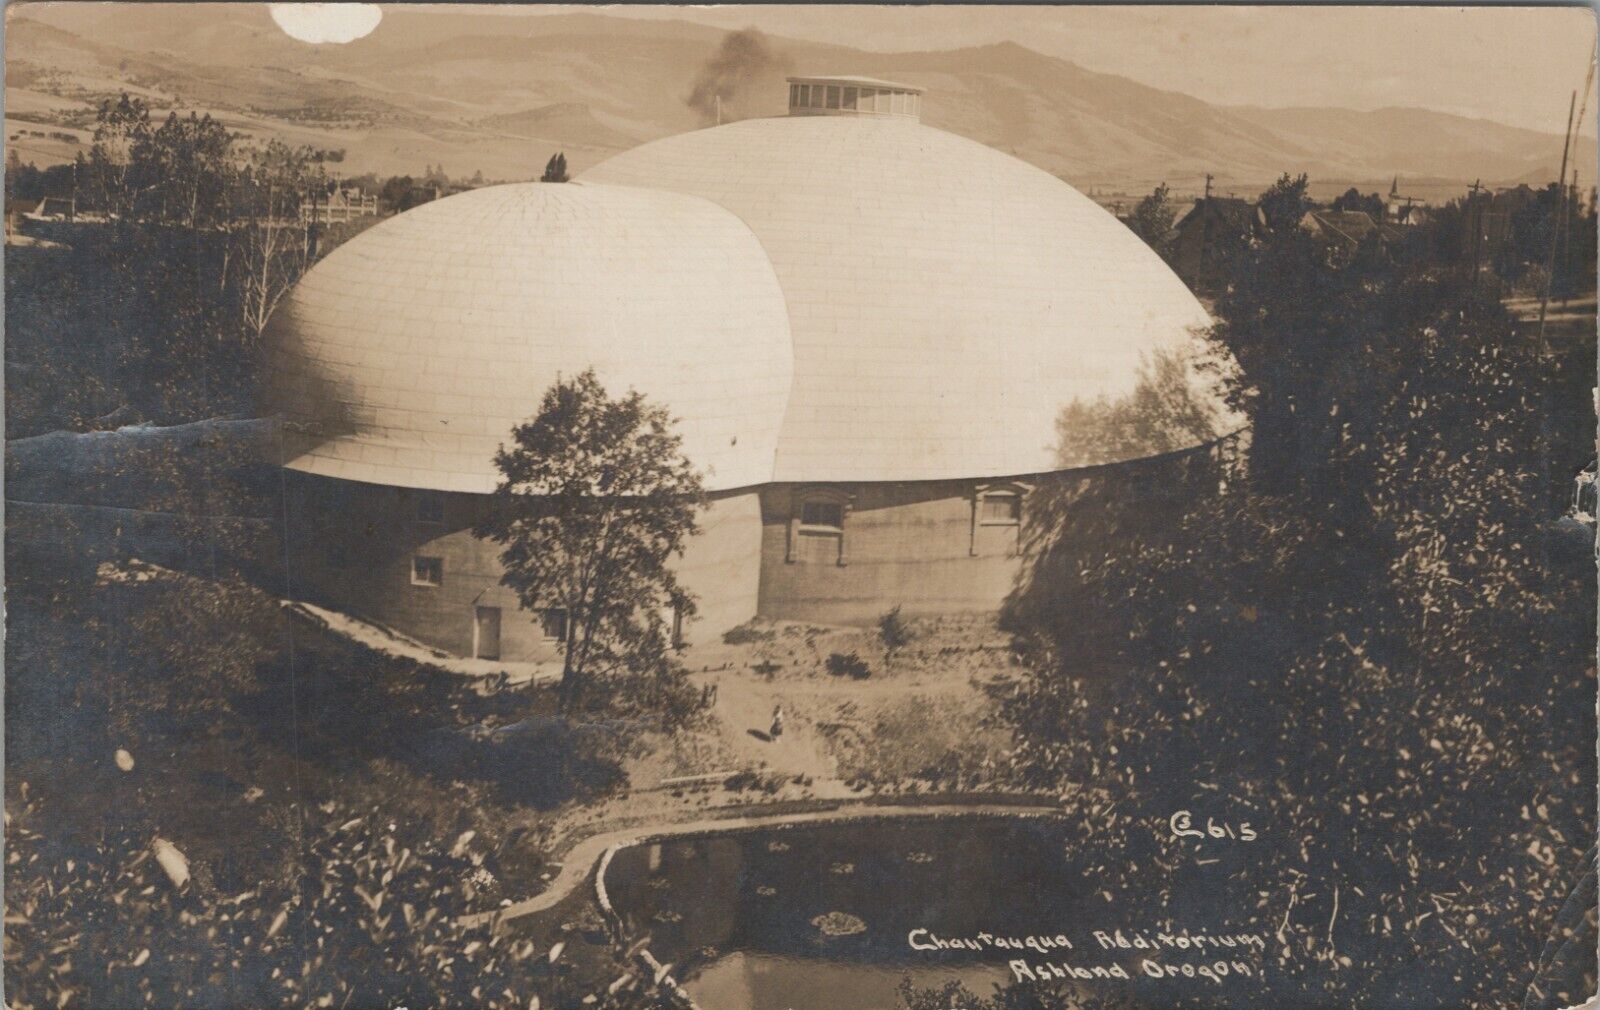 RPPC Chautauqua Auditorium Ashland OR Oregon Aerial c1915 photo postcard G560